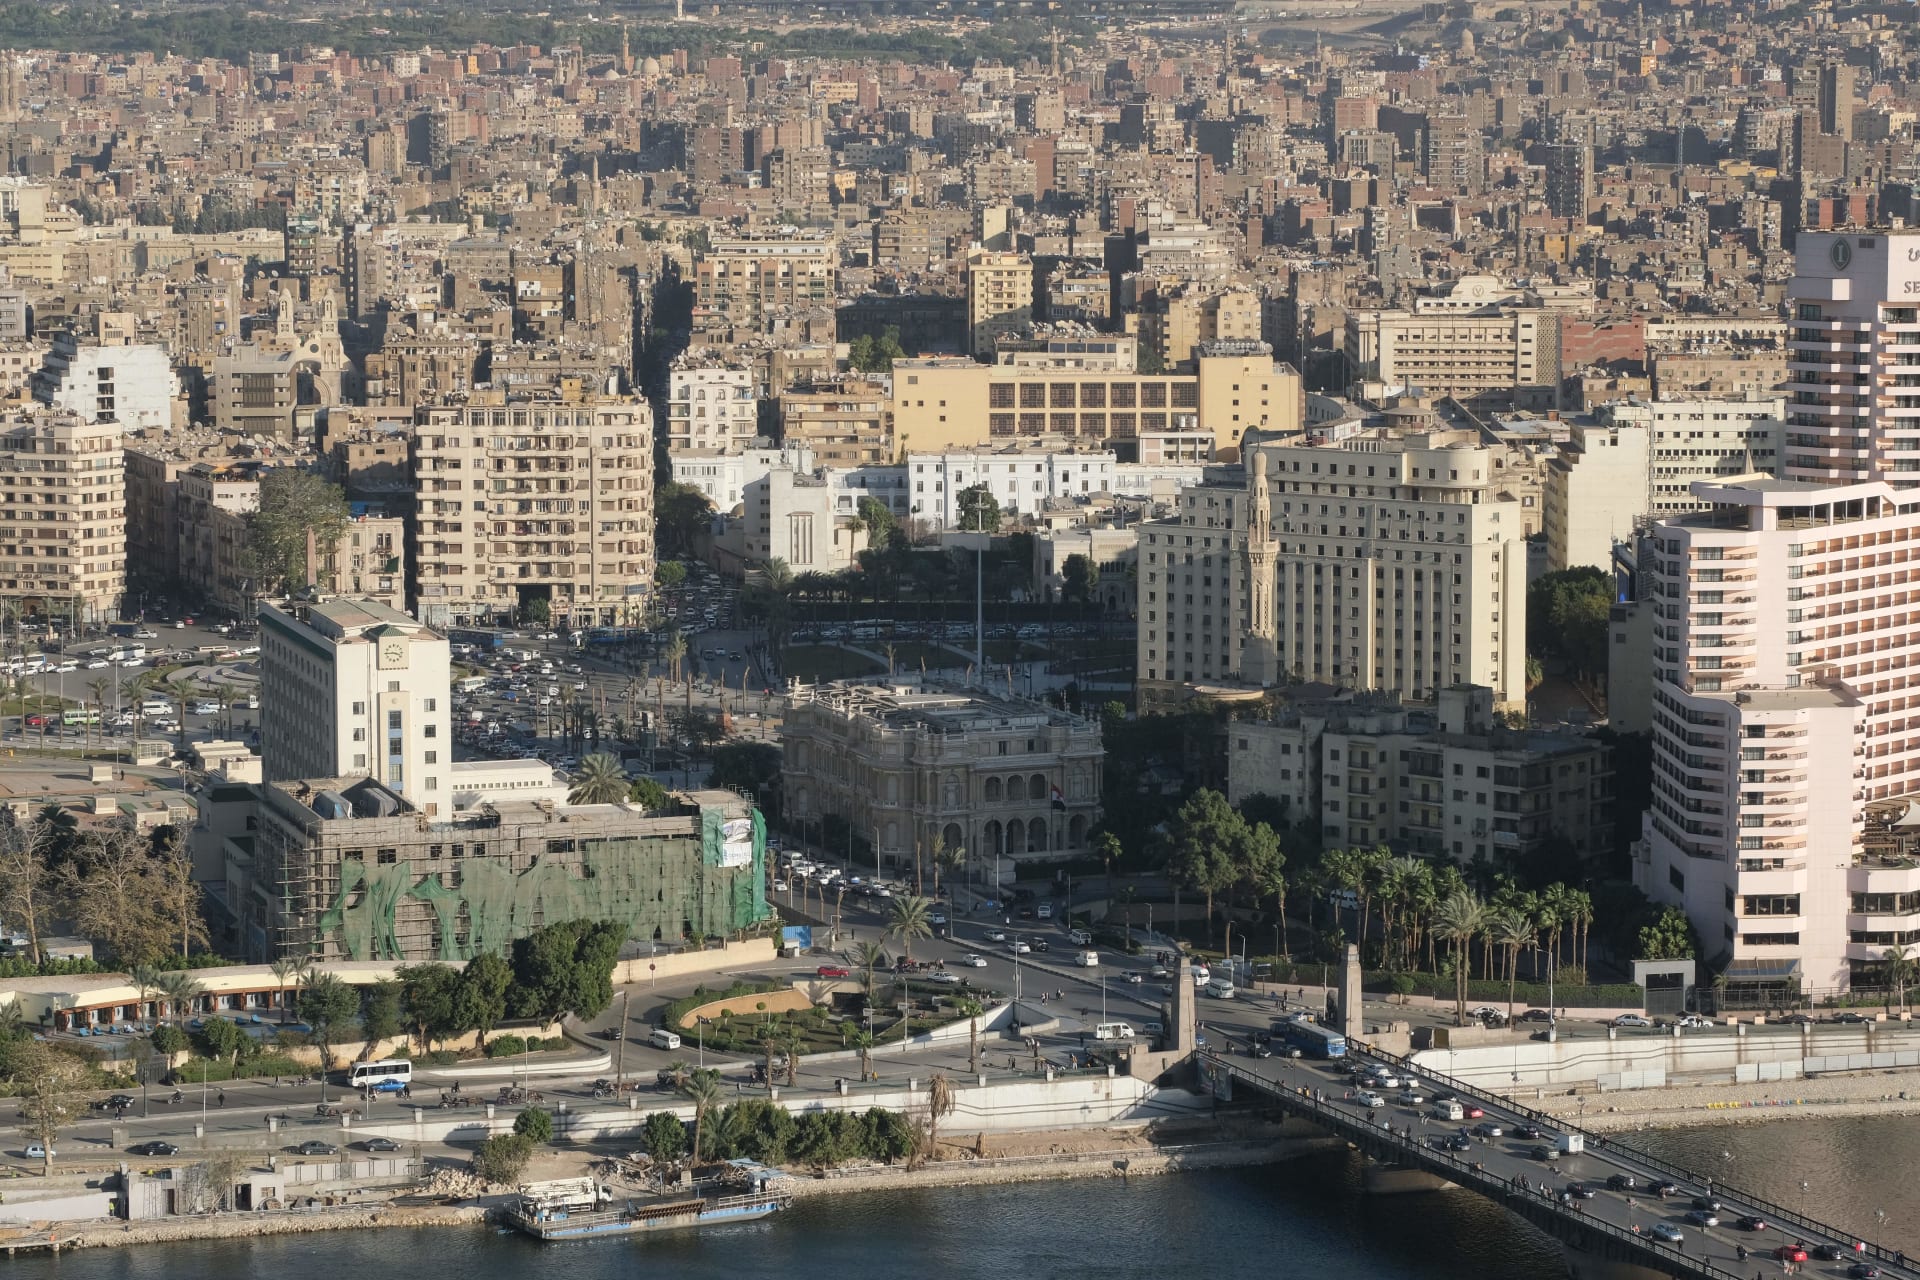 بتهمة "القتل العمد".. الجيش المصري يعلن التحقيق مع المتهم في حادث مدينتي وإحالته للمحكمة العسكرية